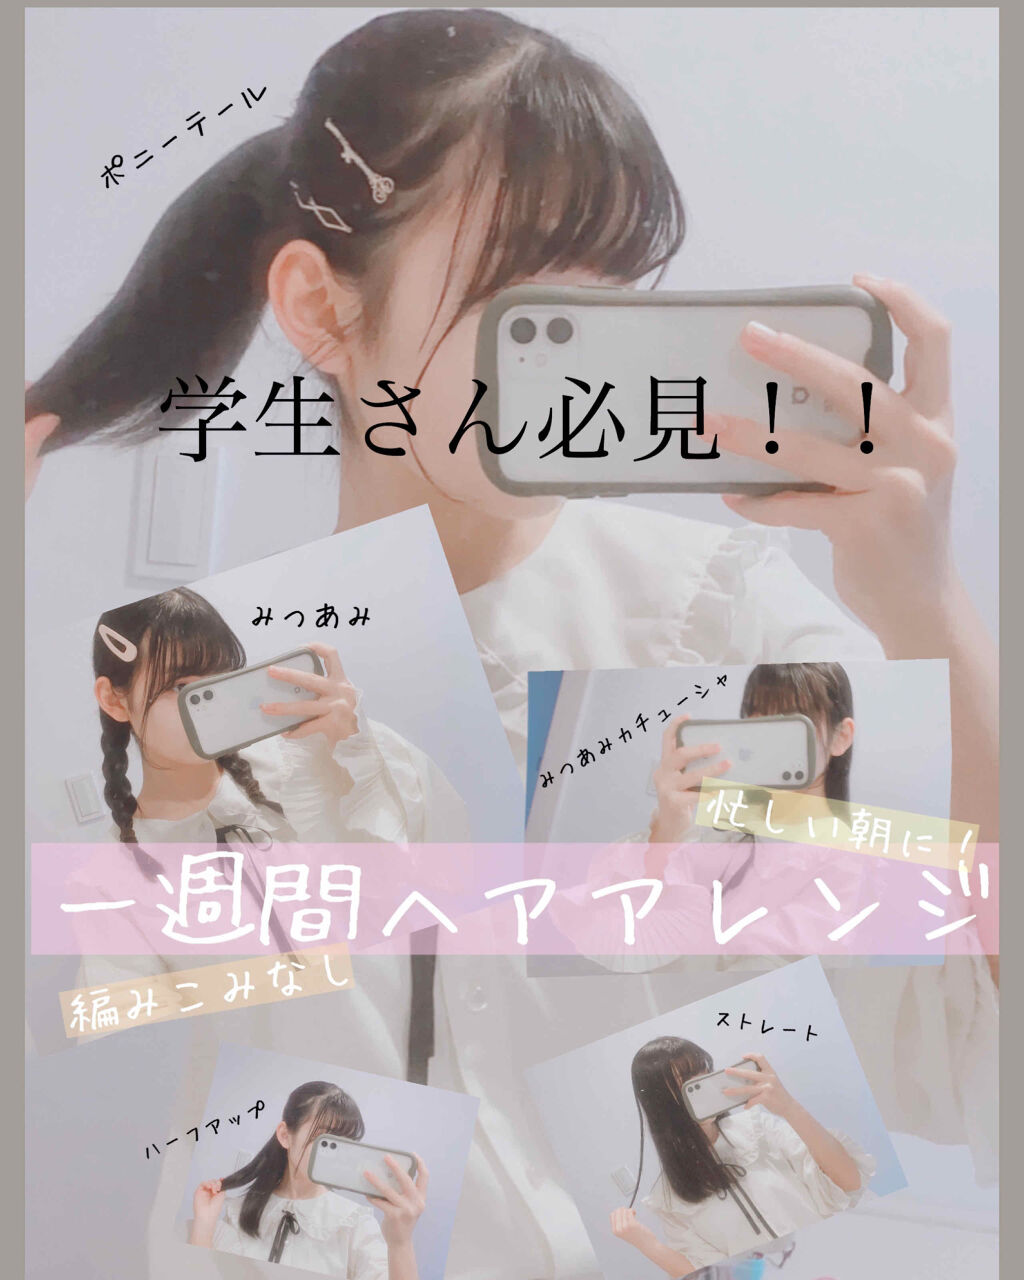 【最高のコレクション】 ポニーテール 学校 ヘア アレンジ 中学生 インスピレーションのための髪型画像Arinekamigata